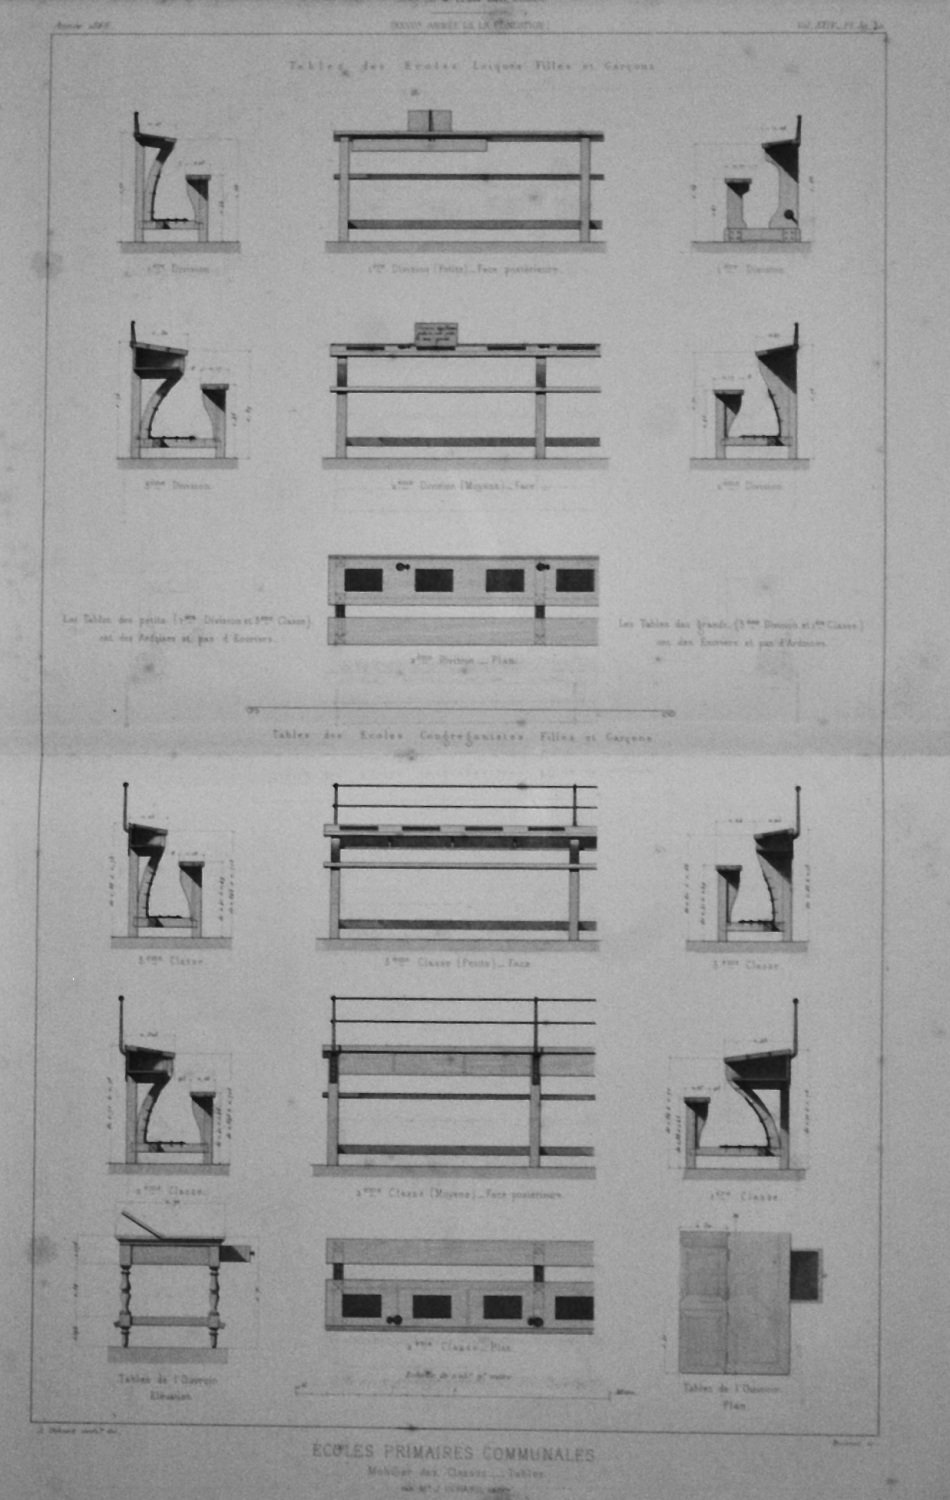 Ecoles Primaires Communales.  Mobilier des Classes ___ Tables.  1866.